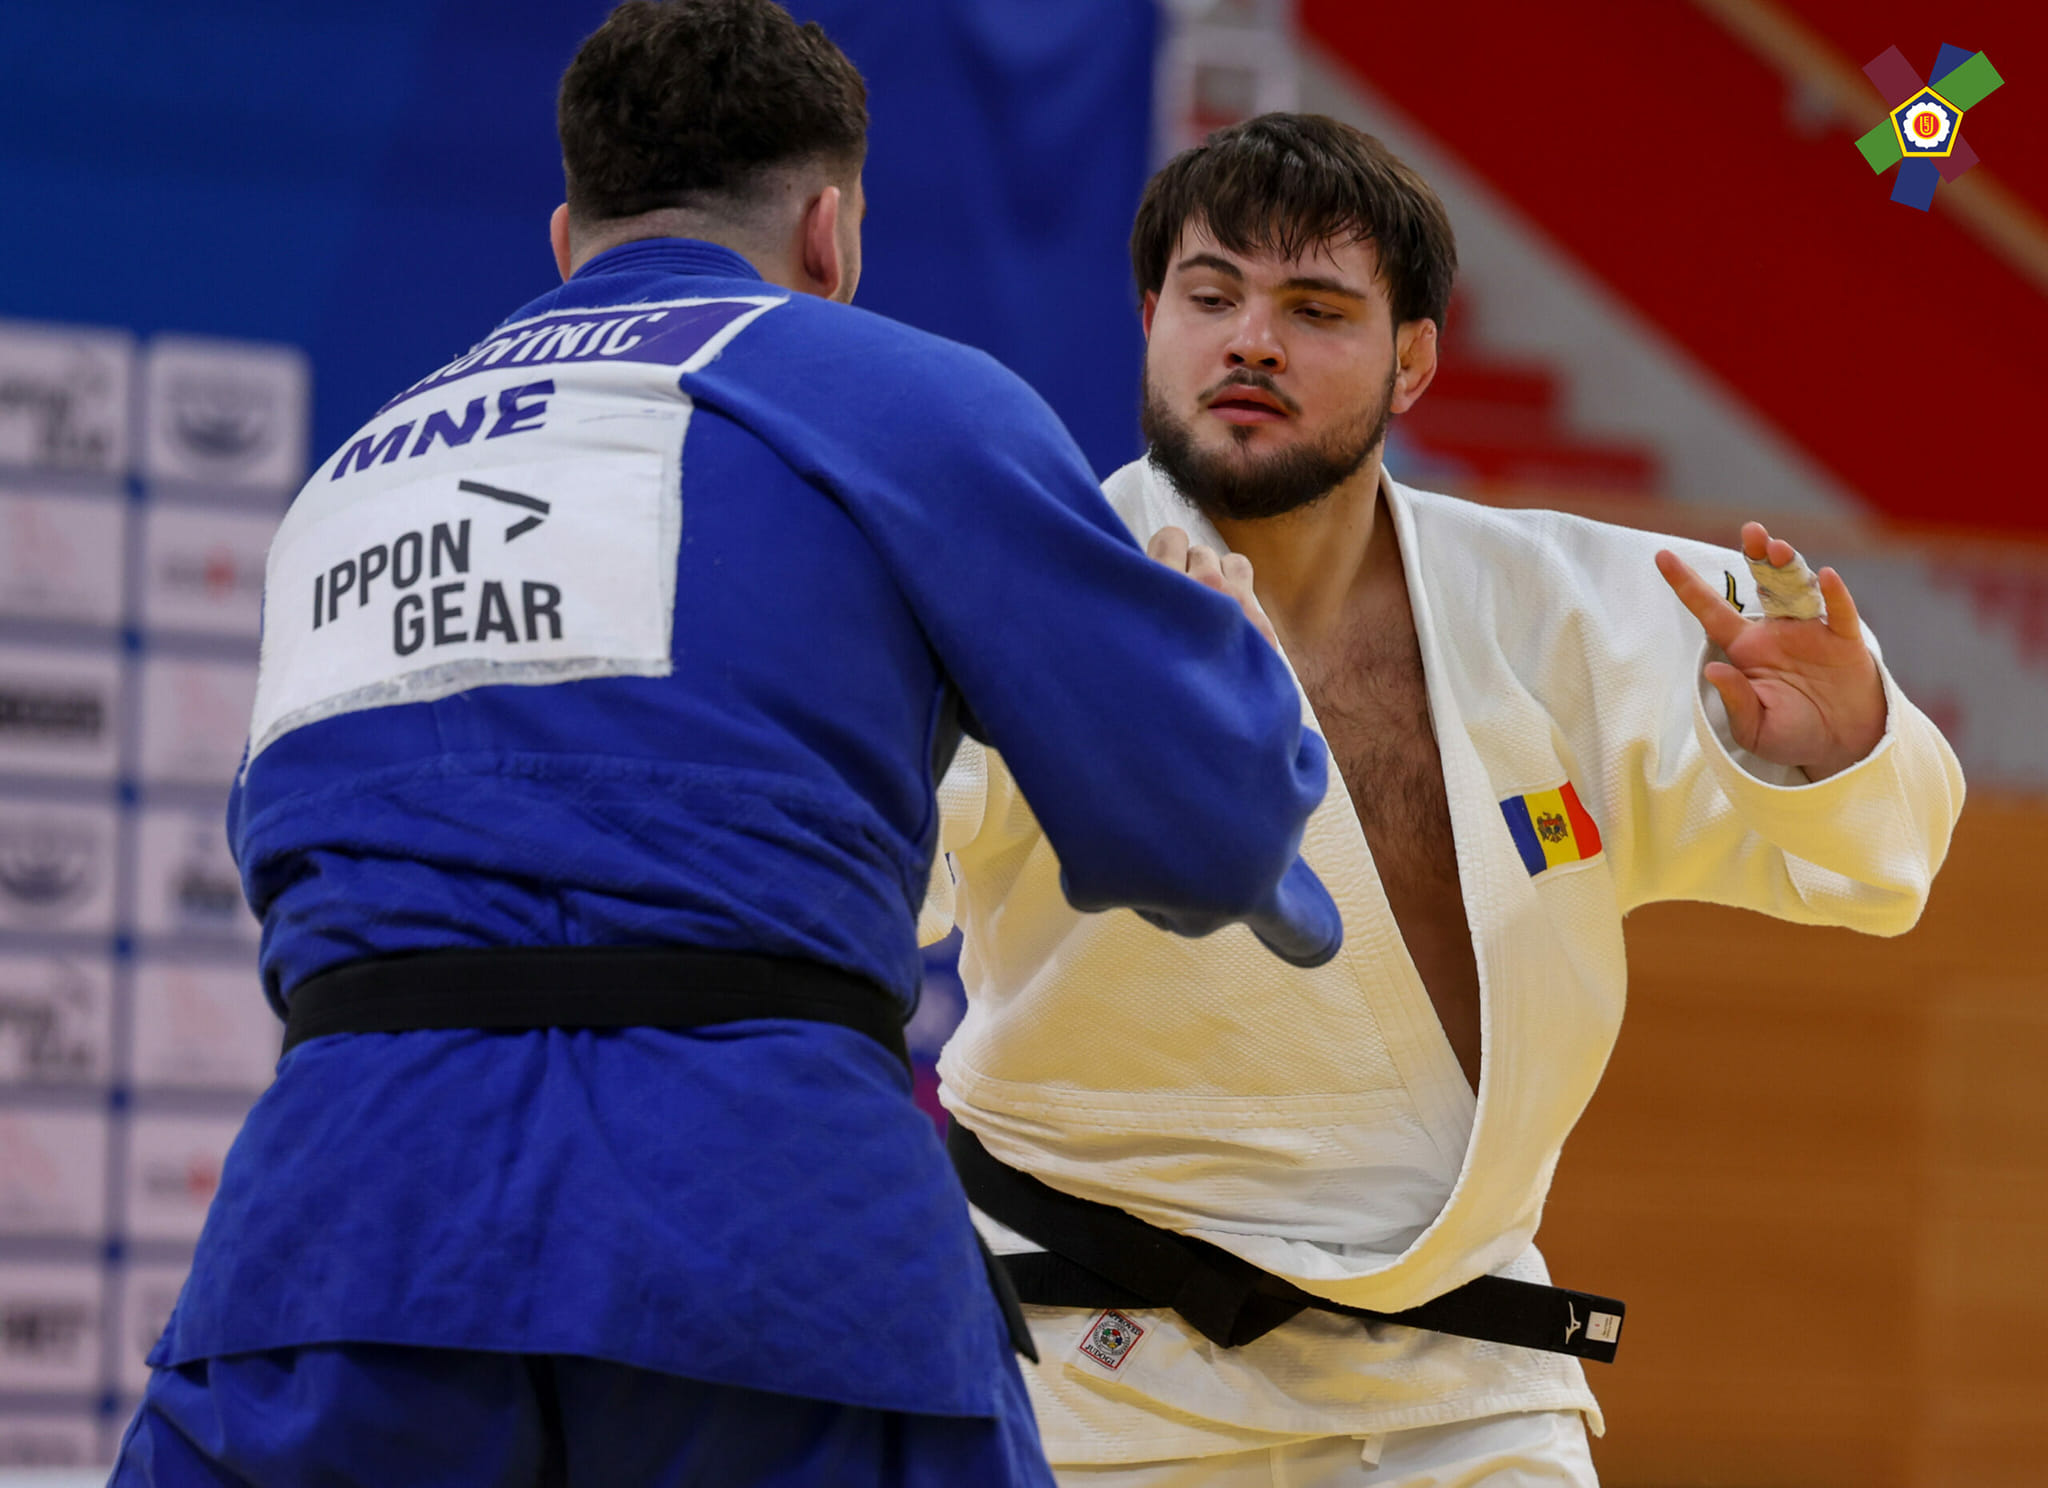 O nouă victorie pentru Moldova, la campionatul european de judo din Germania. Sportiva Oxana Diacenco a obținut bronzul